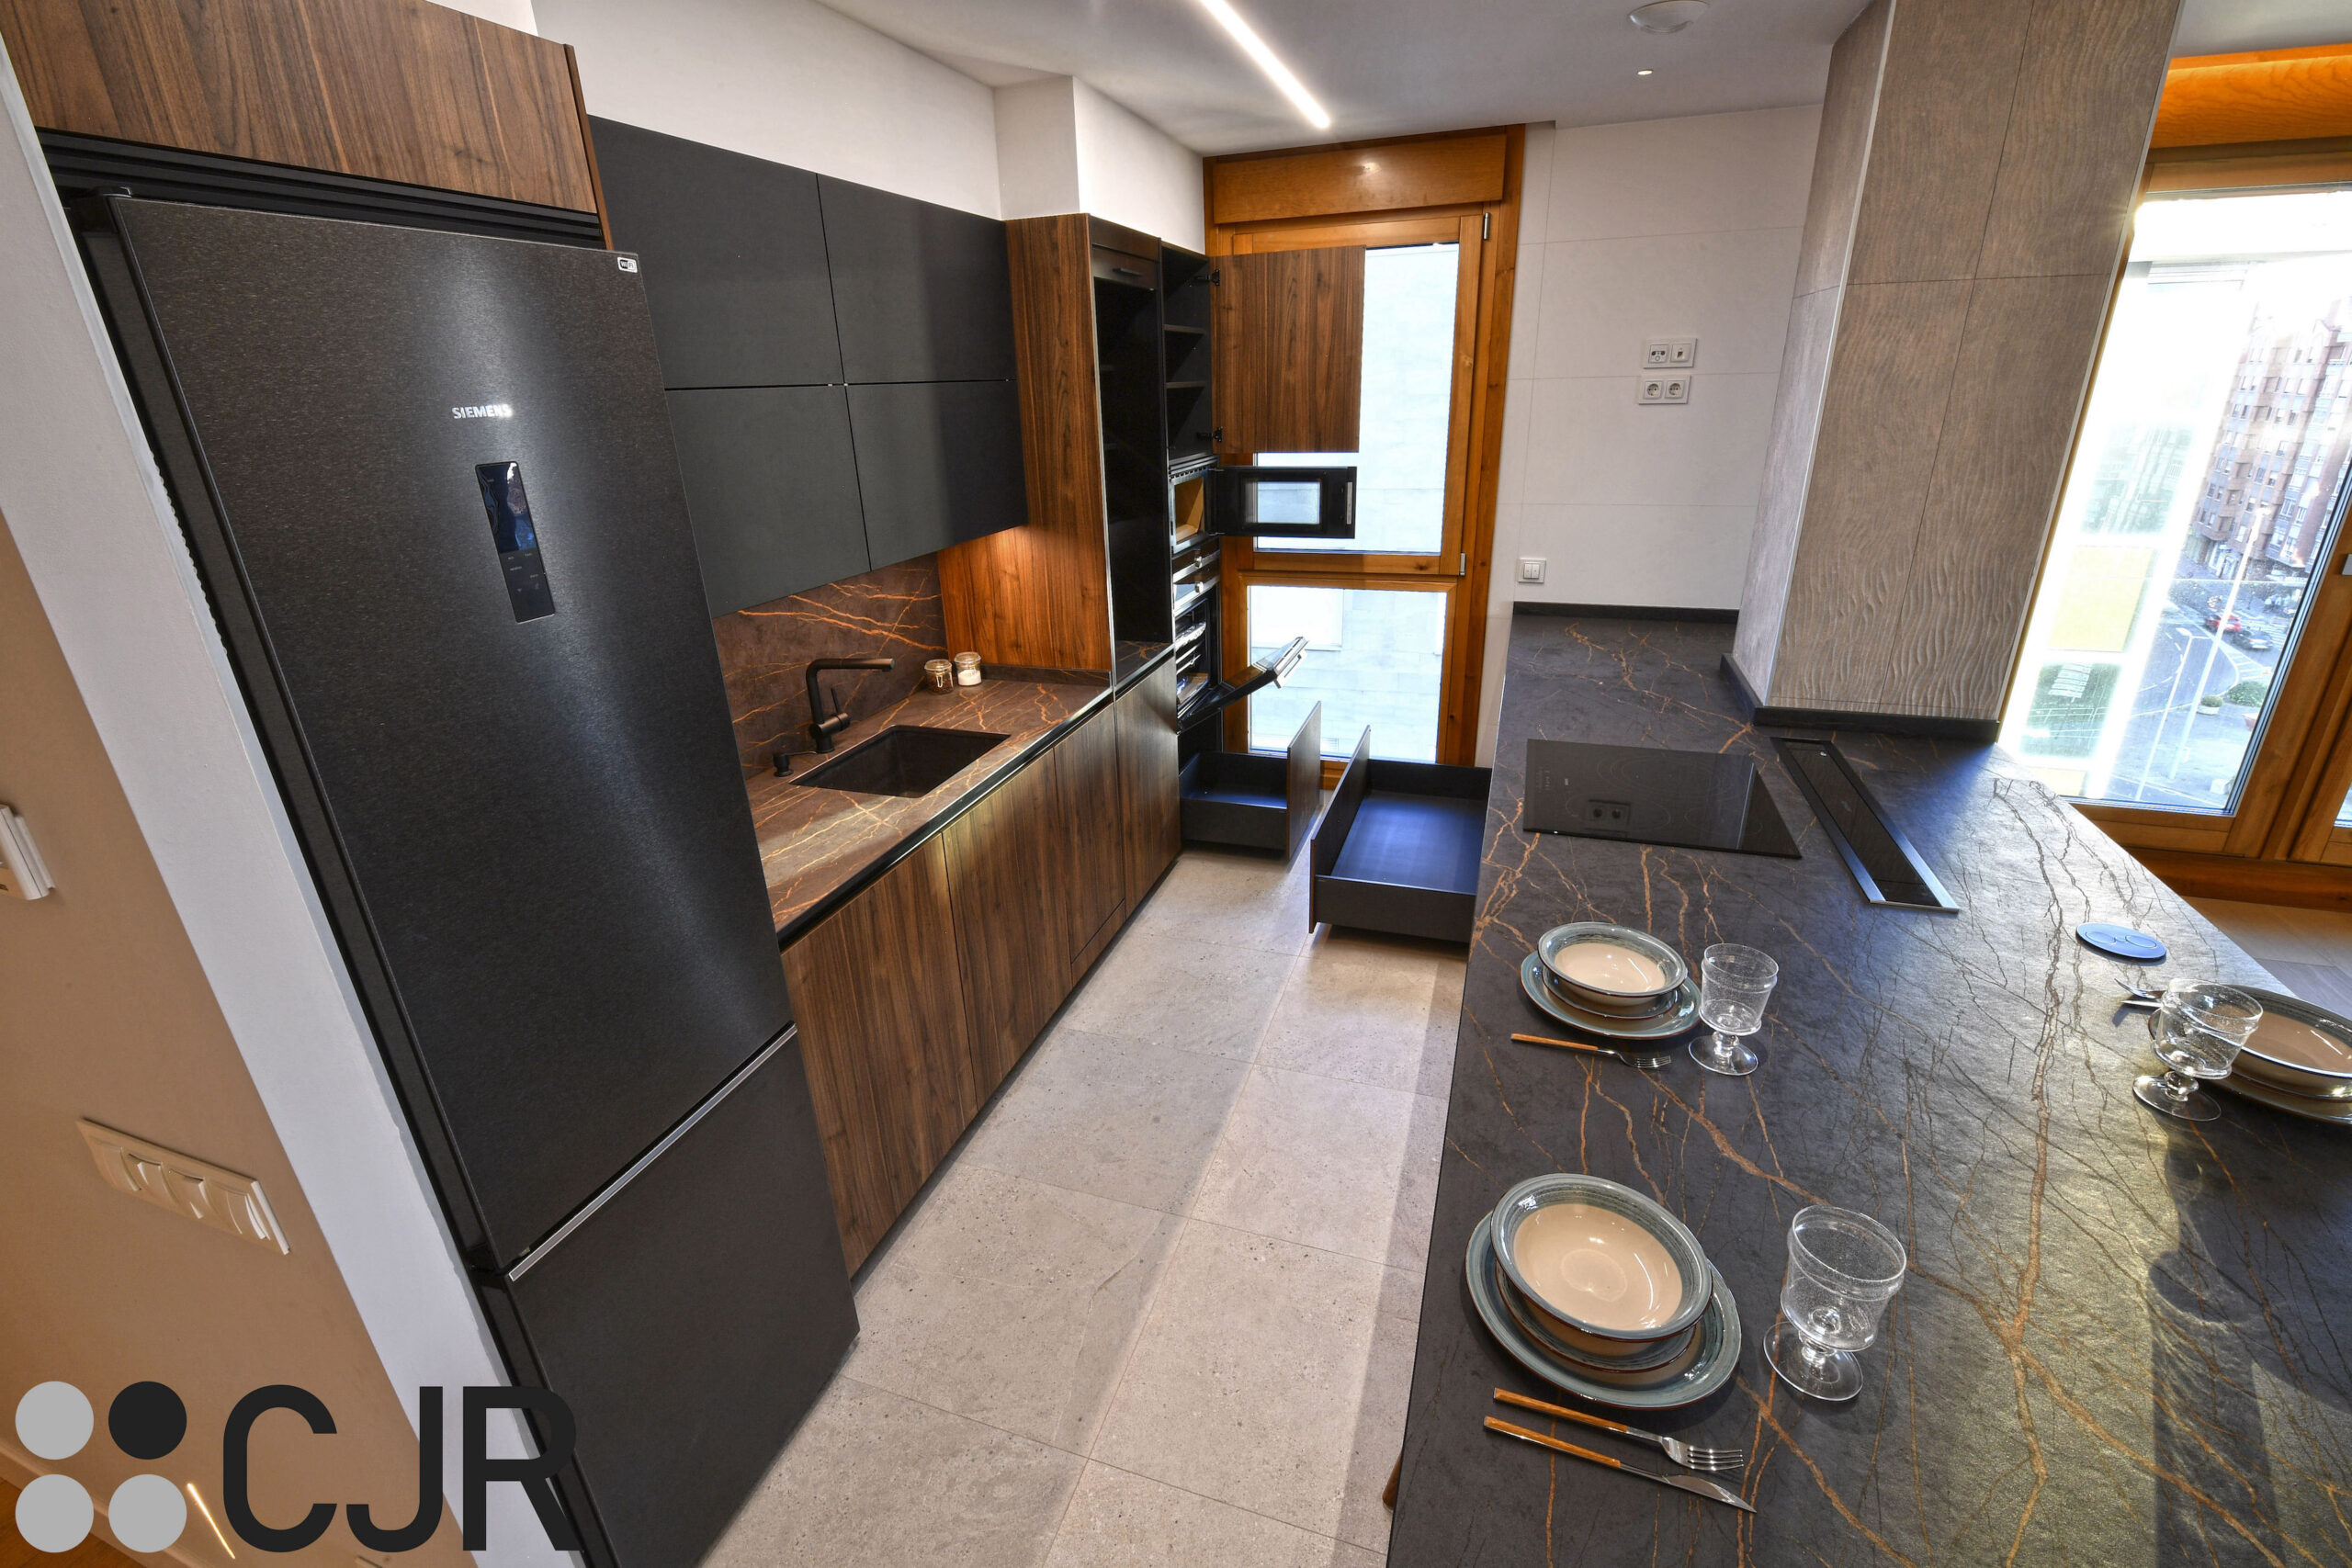 cocina abierta al salon con muebles bajos en negro y madera cocinas cjr